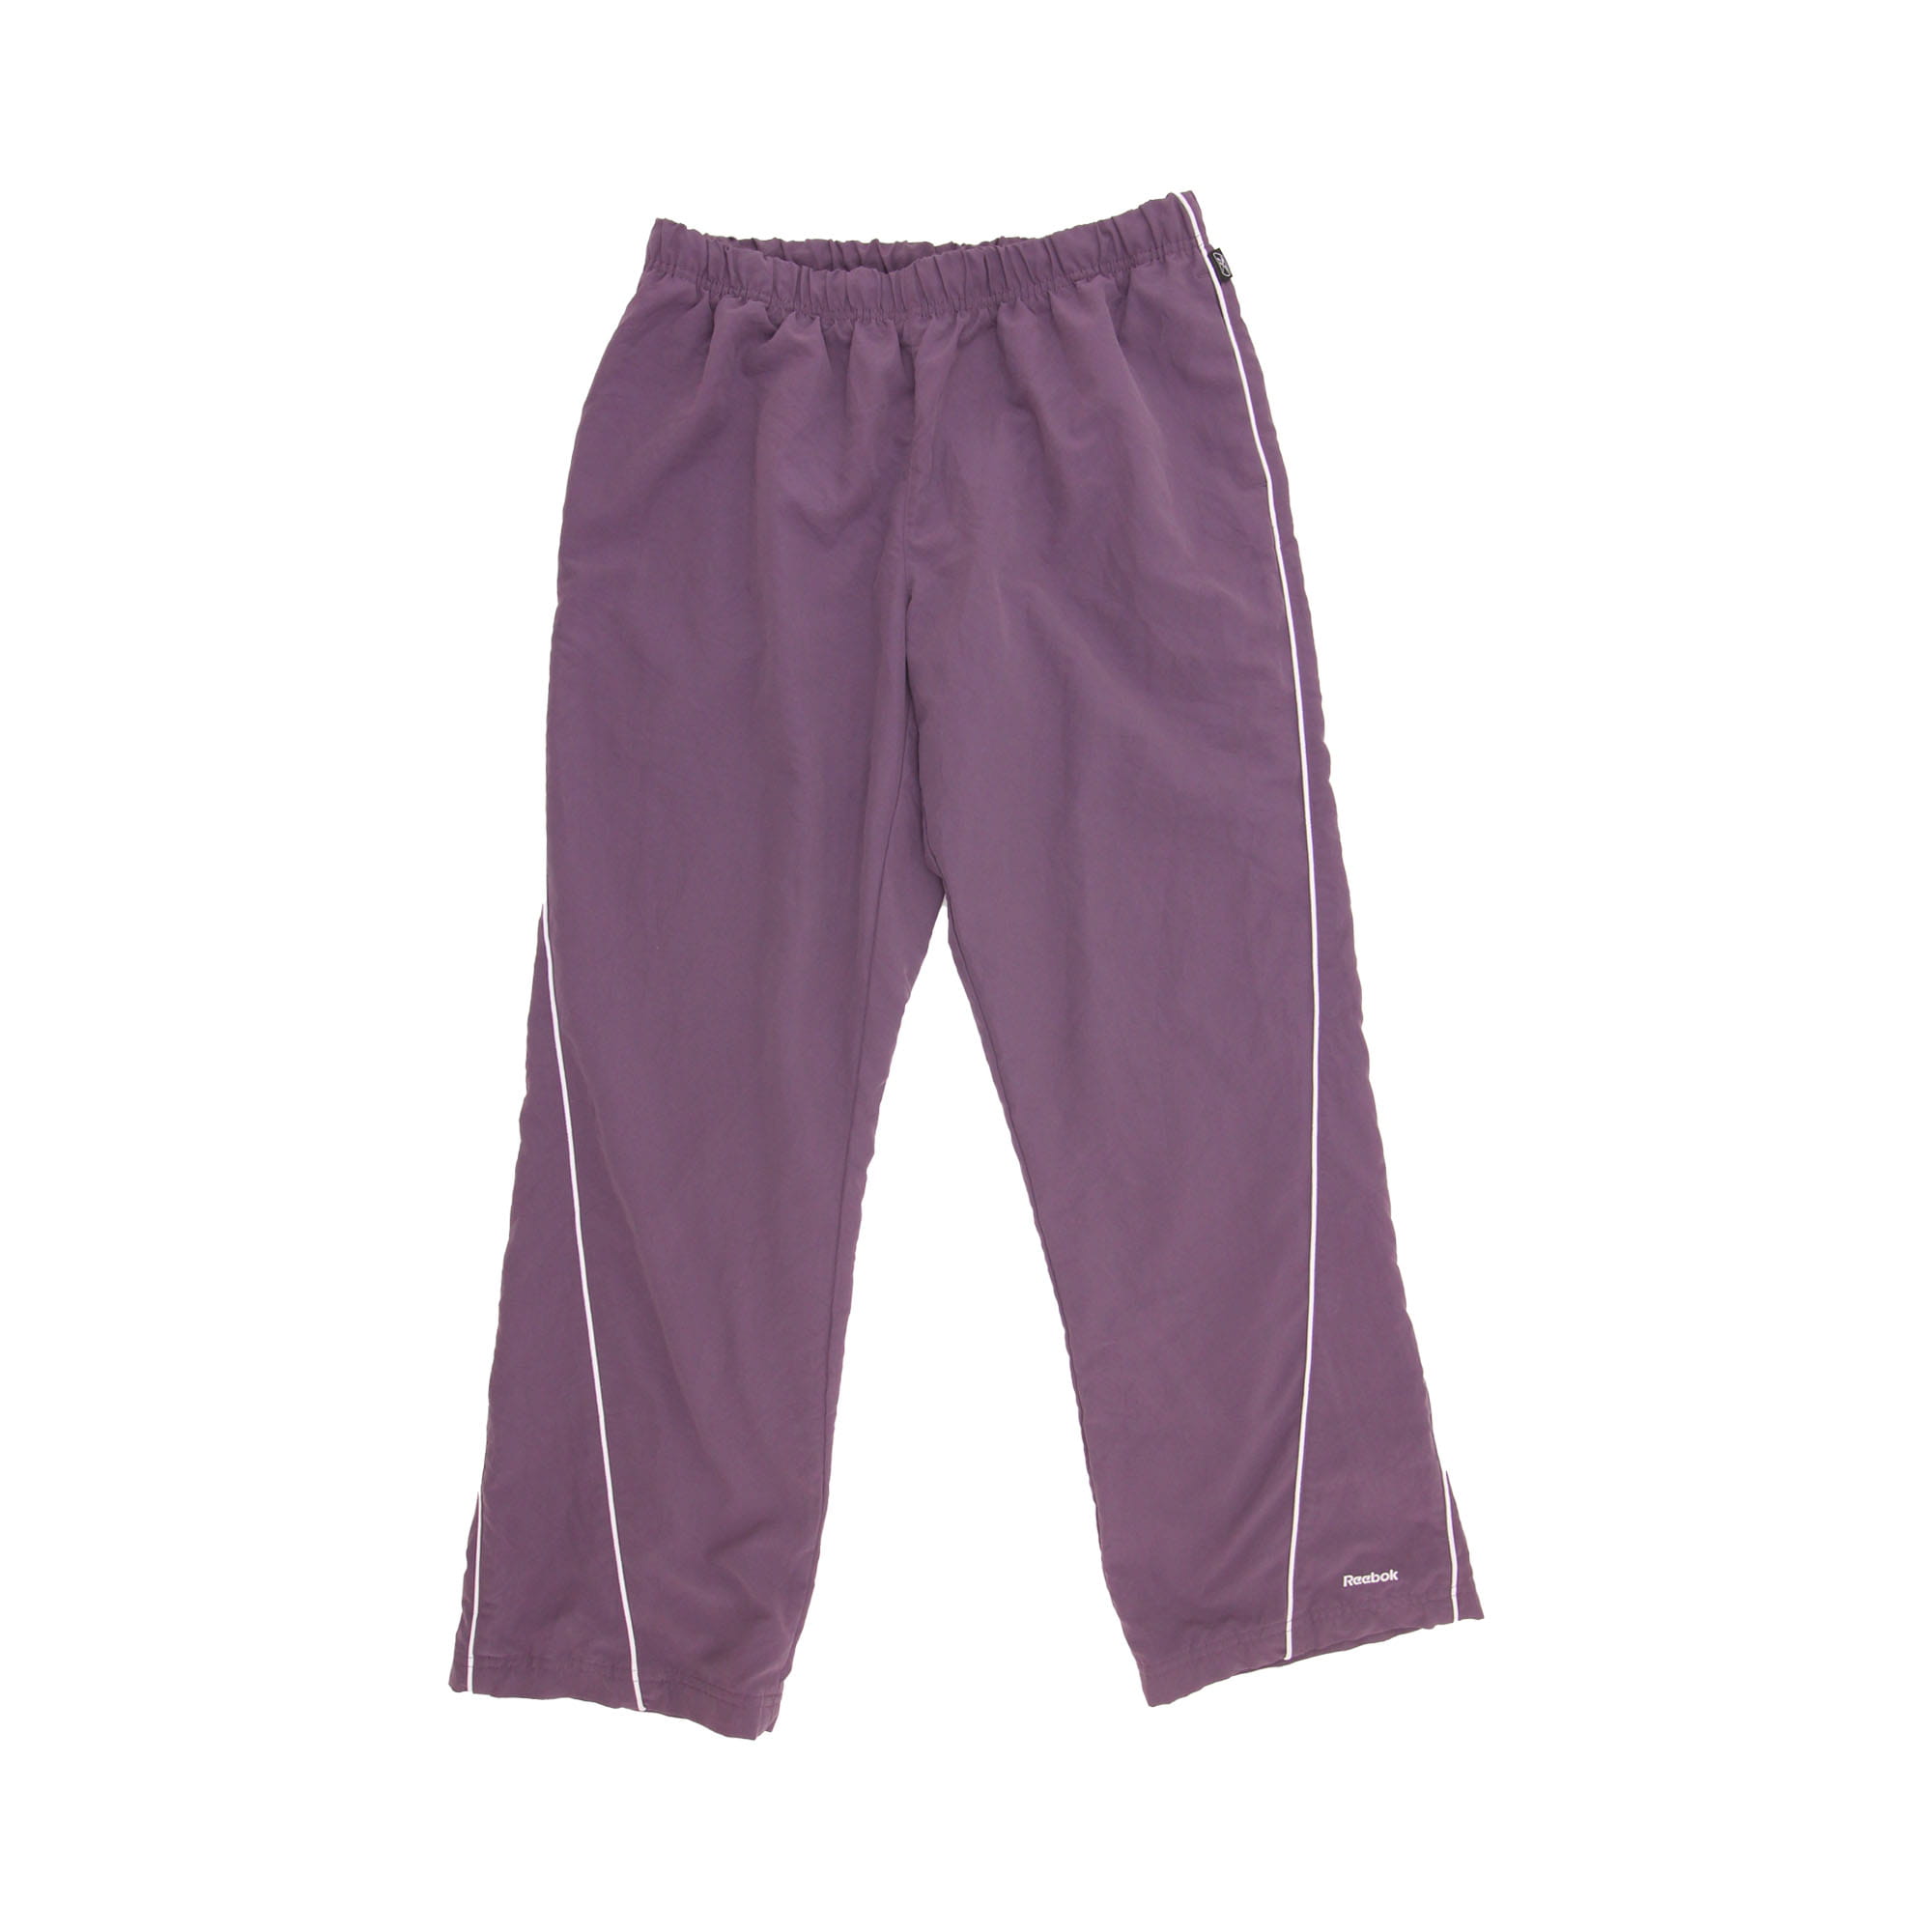 Reebok Track Pants Purple -  M/L